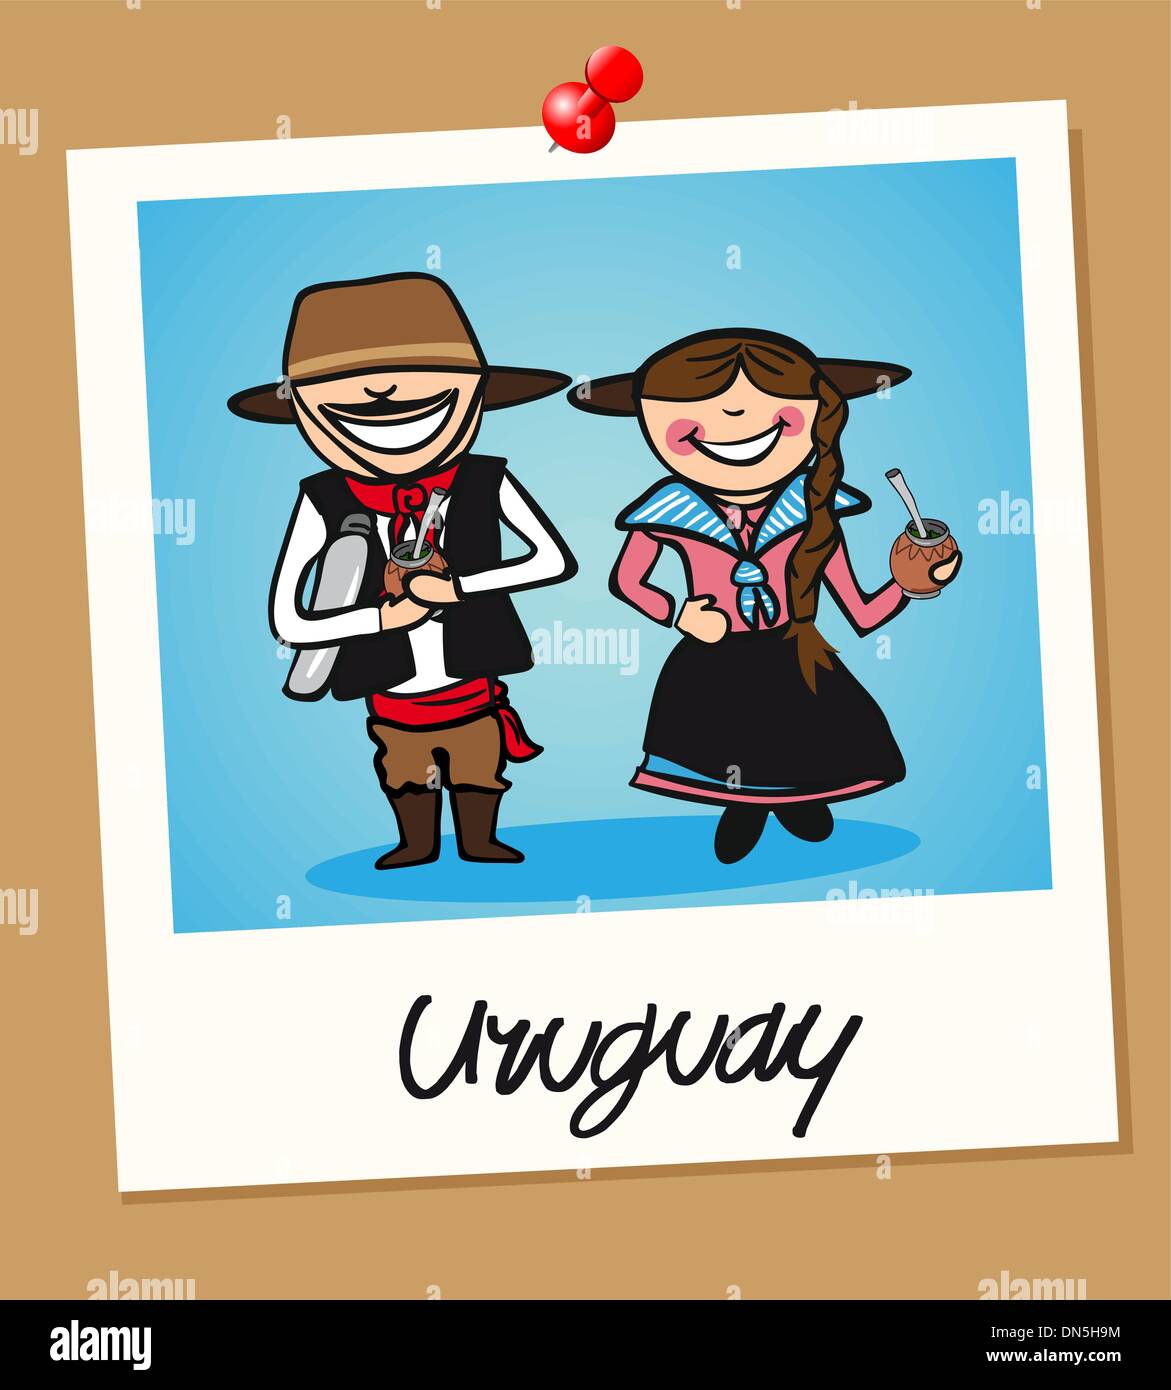 Les personnes en voyage d'Uruguay instant photo frame Illustration de Vecteur